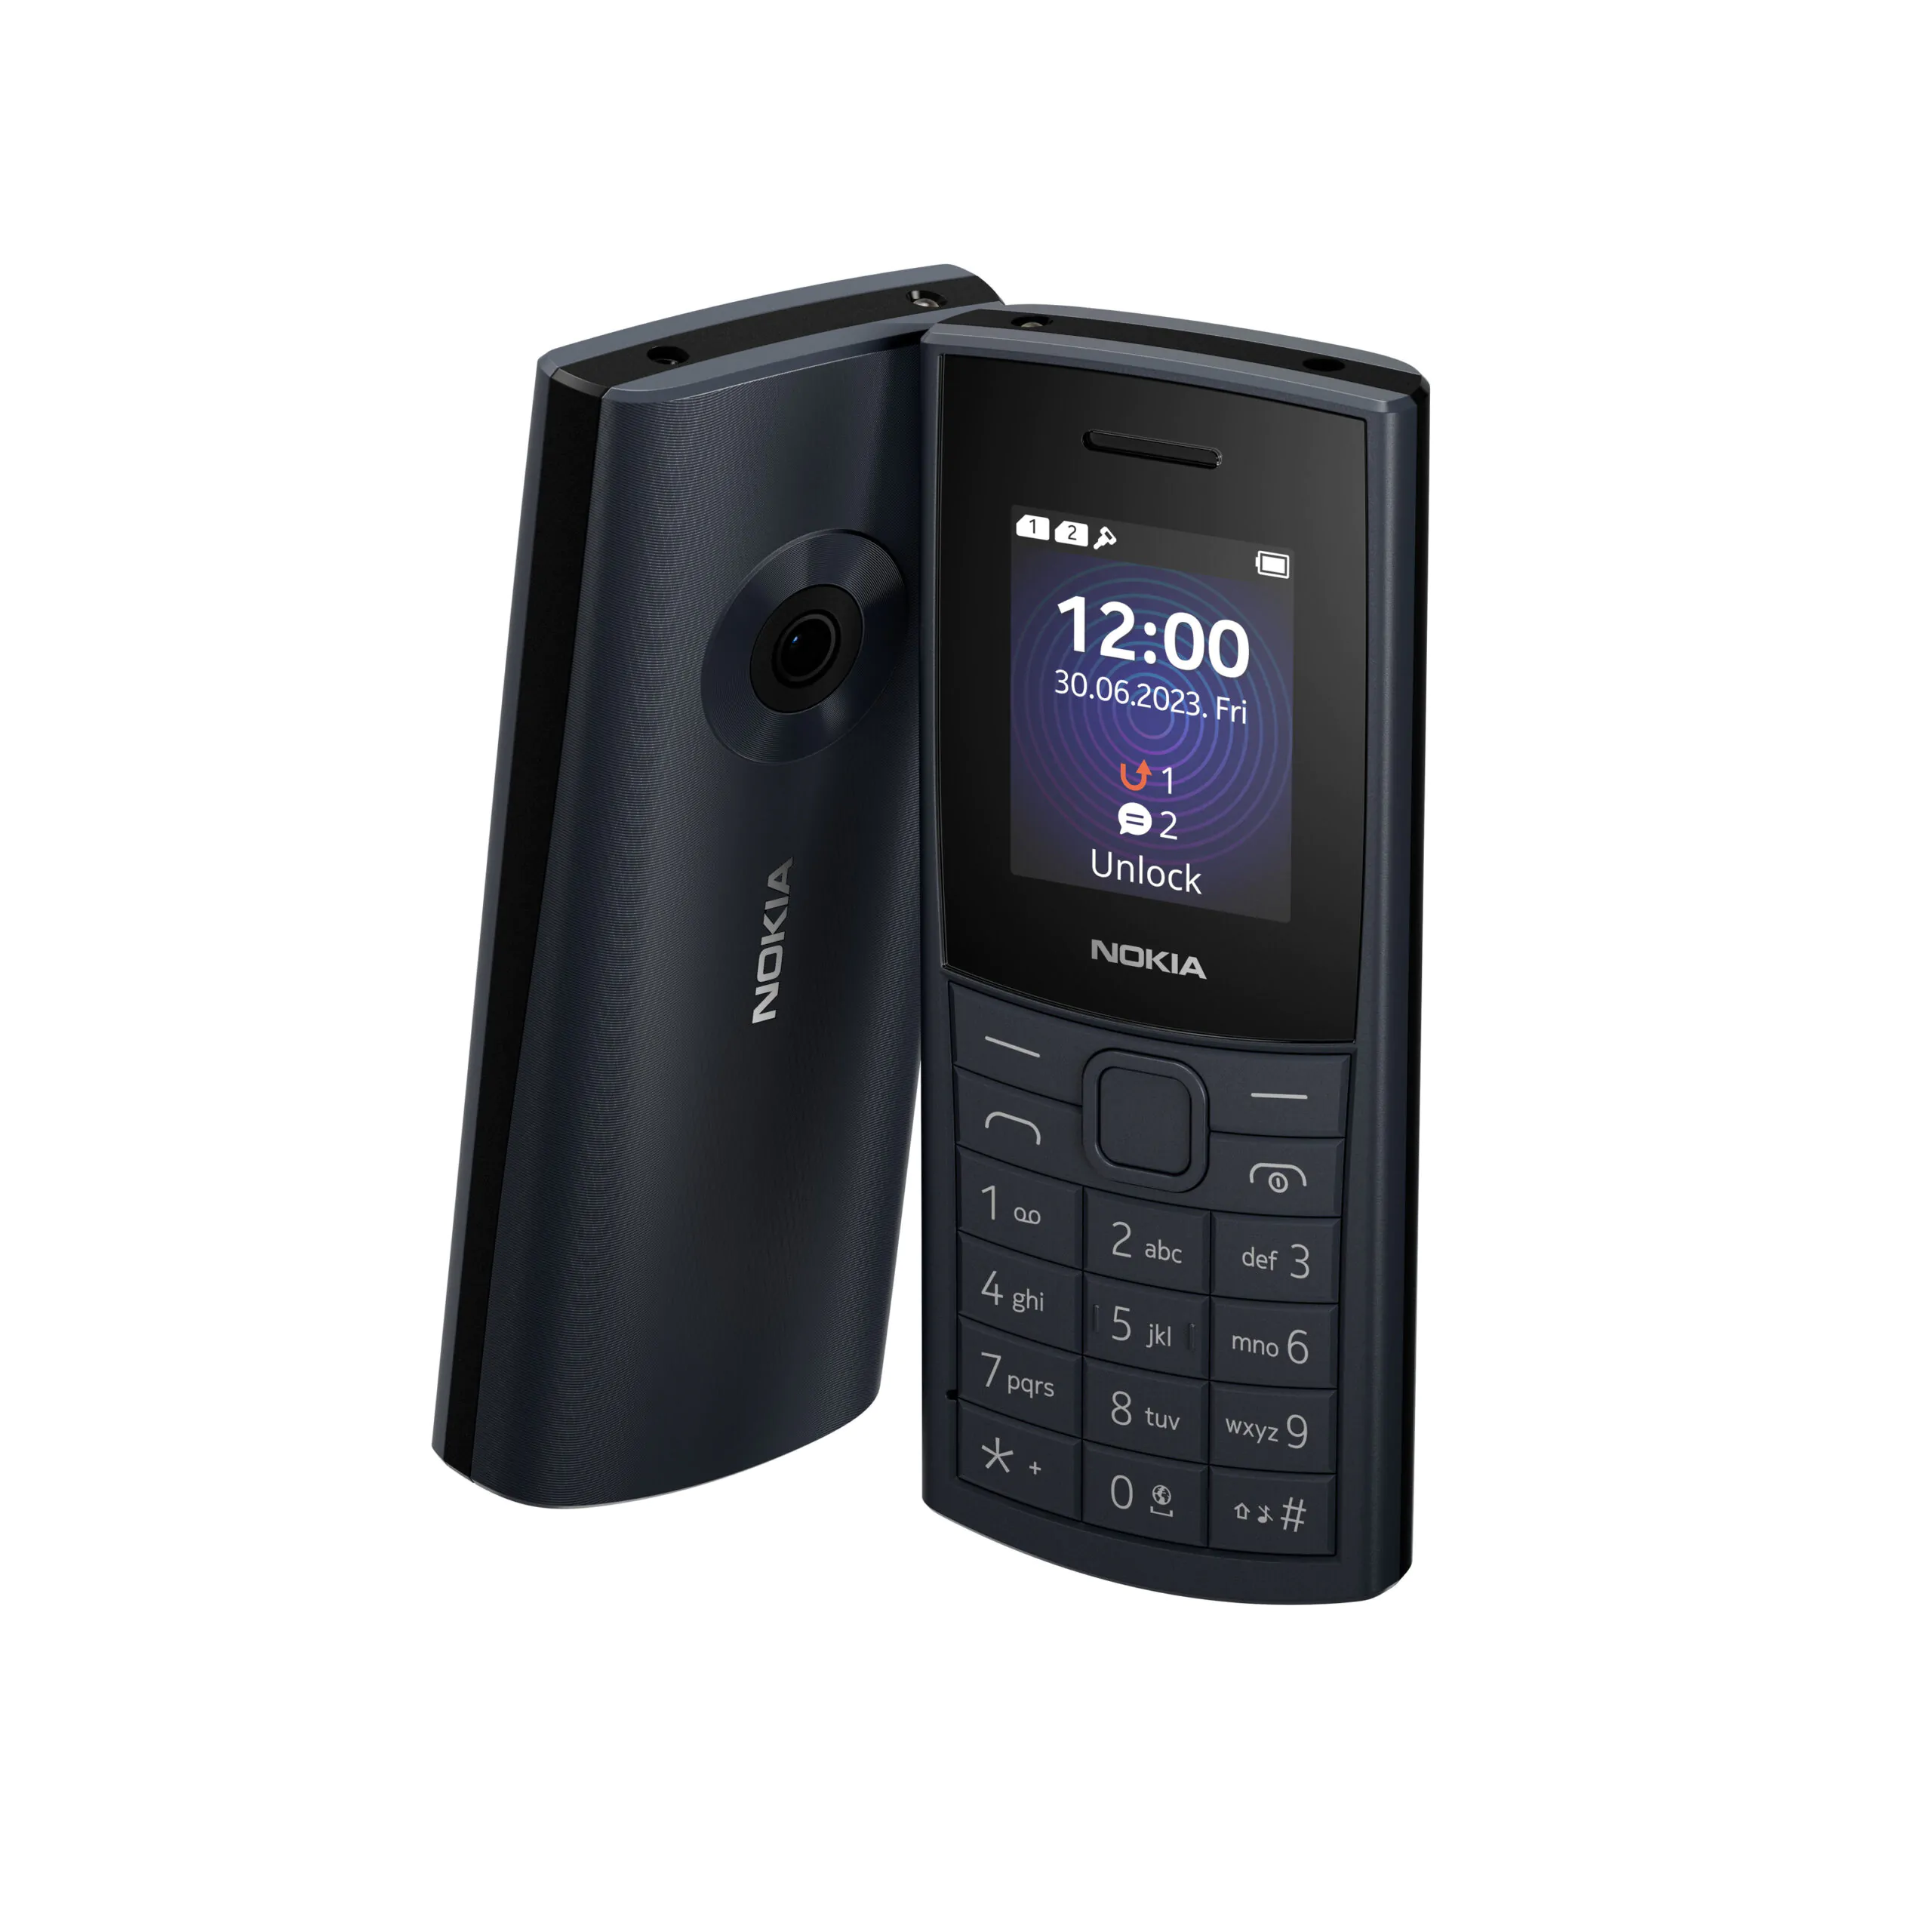 Nokia 110 4G 4 scaled | Nokia 105 4G | โนเกียส่งฟีเจอร์โฟน 2 รุ่นใหม่ Nokia 110 4G และ 105 4G ตอบรับมือถือปุ่มกดยังมีดีมานด์